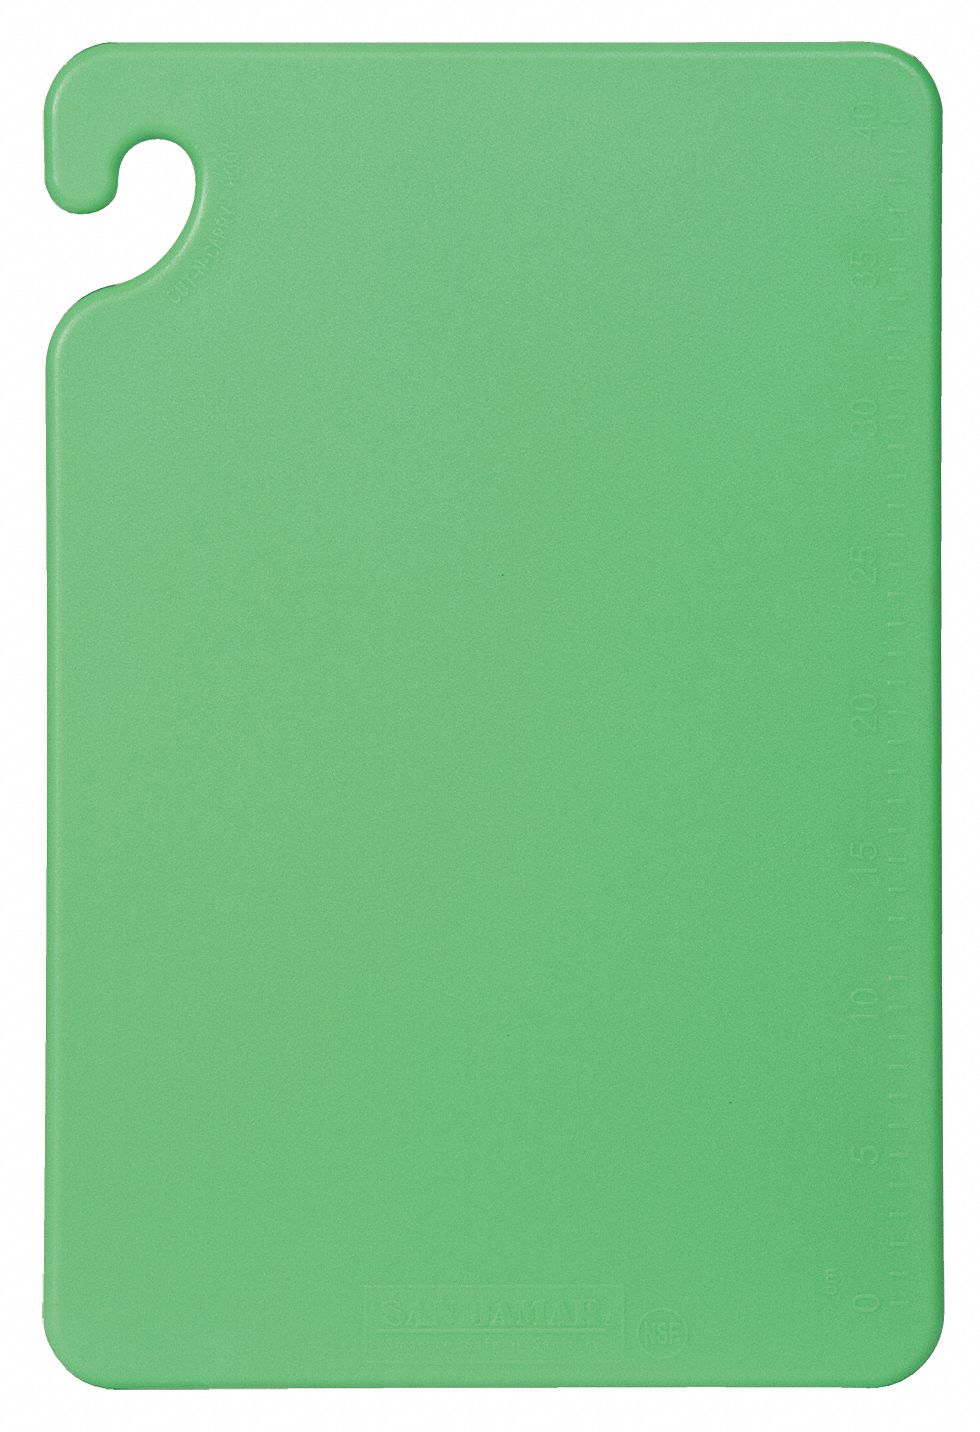 6ADP8 - Cutting Board 12x18 Green